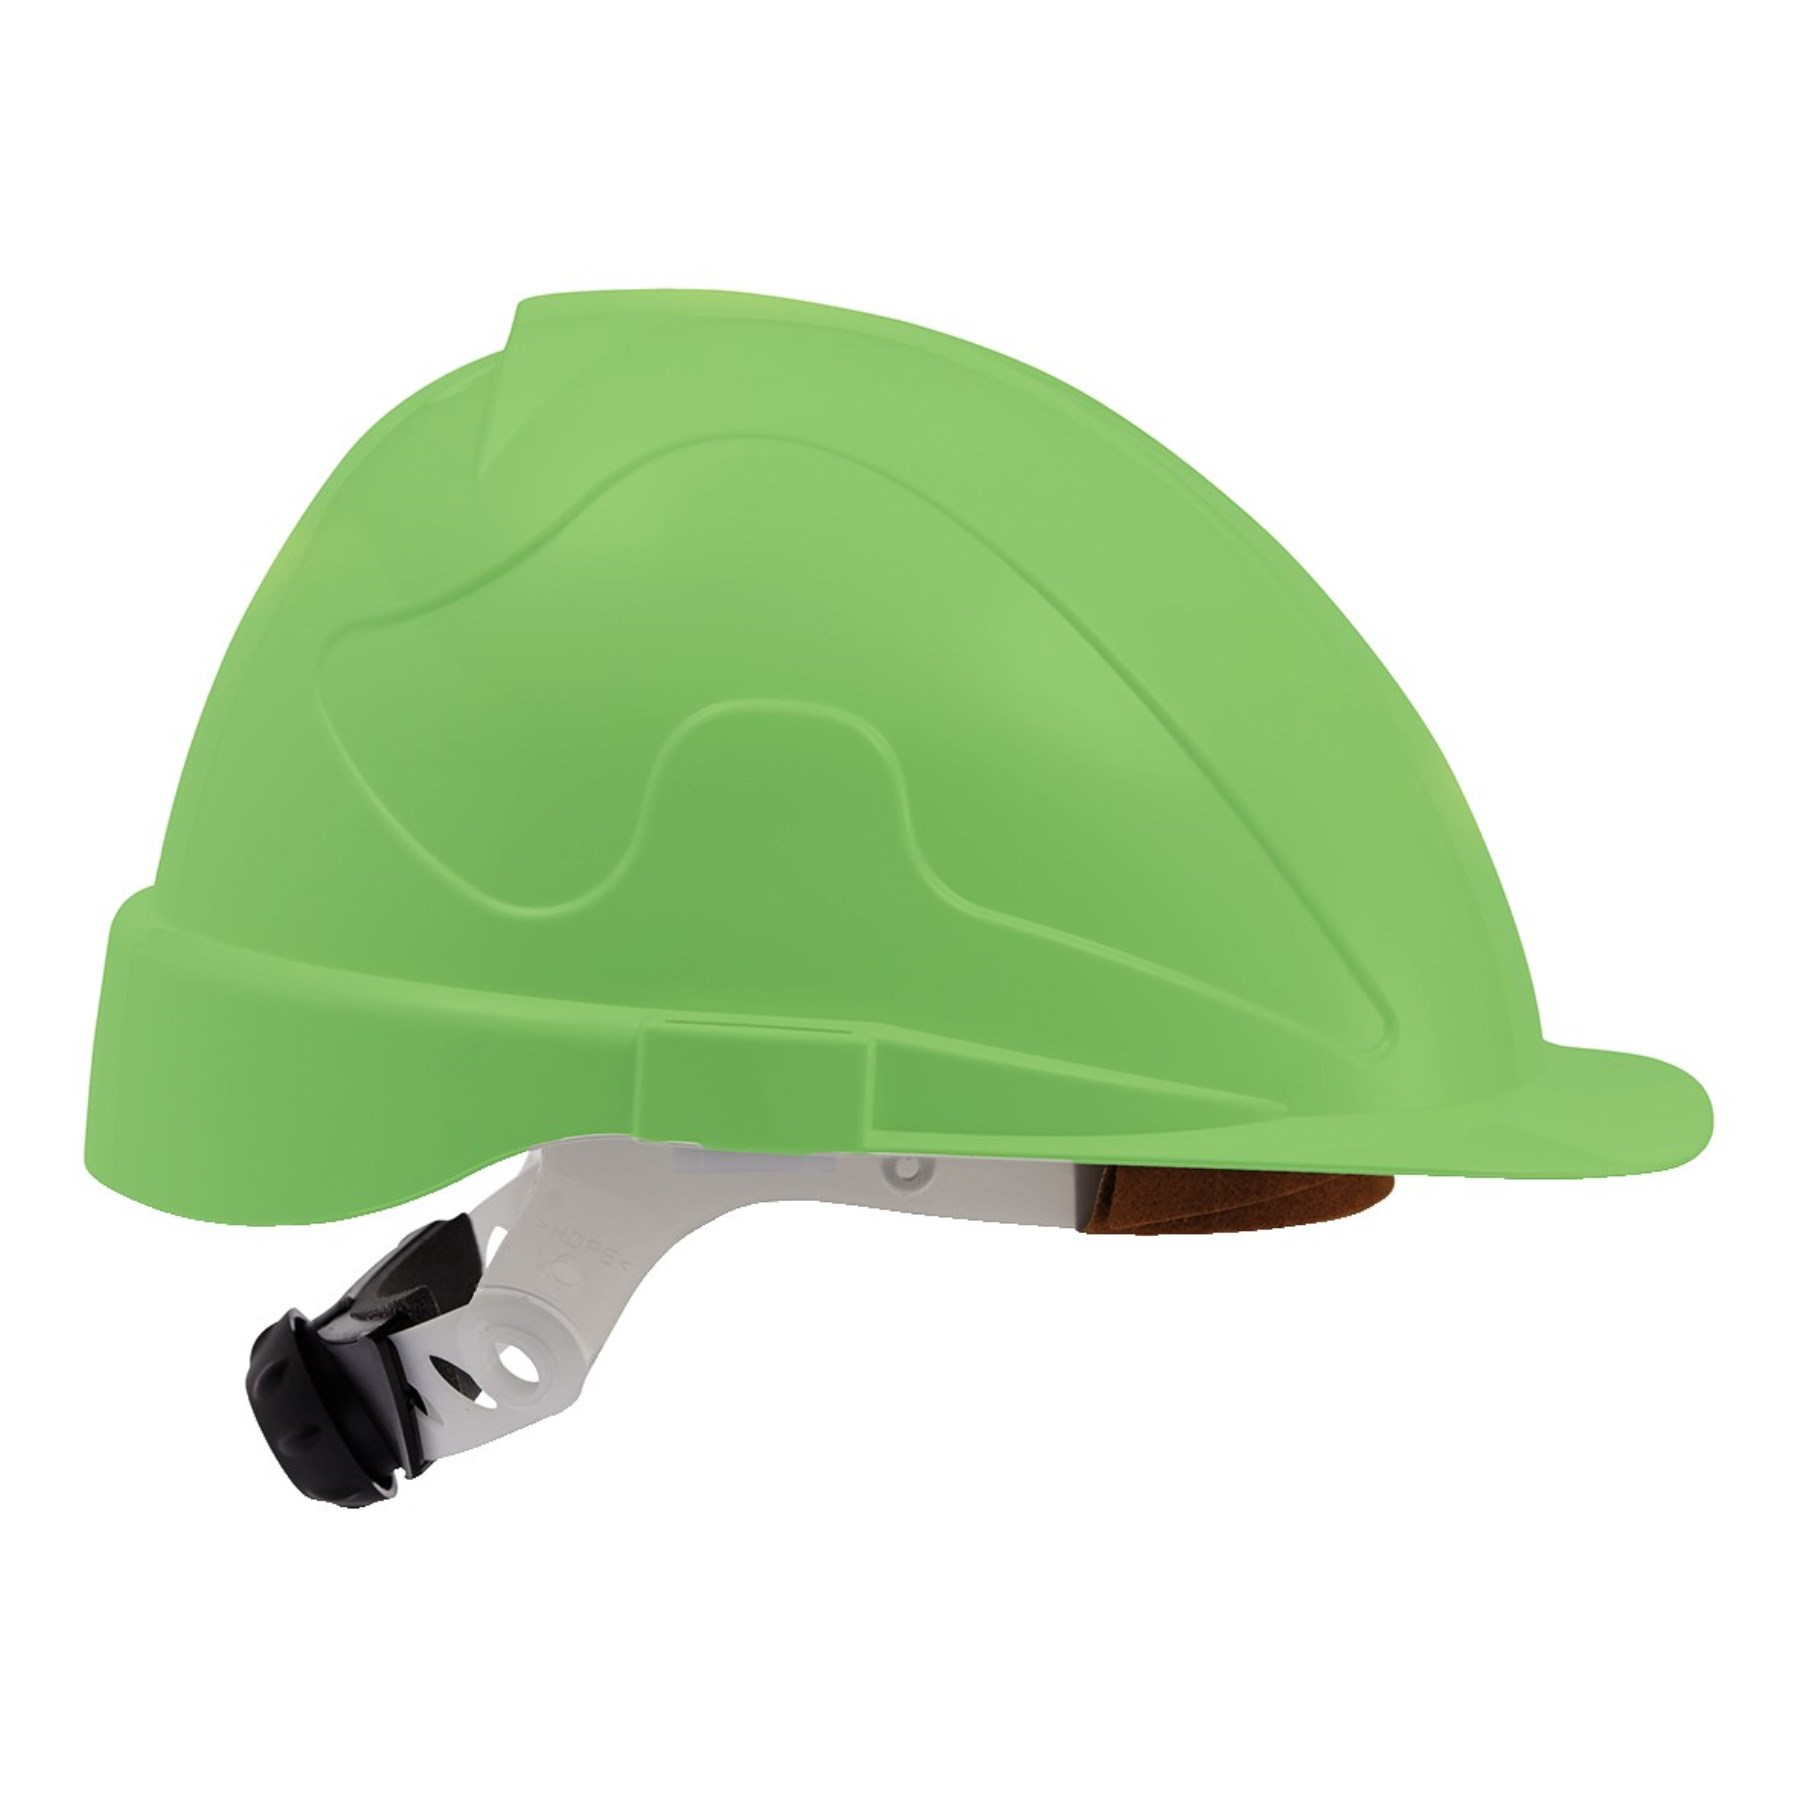 1245922 - Bauschutz-Helm neongrün Modell Meister